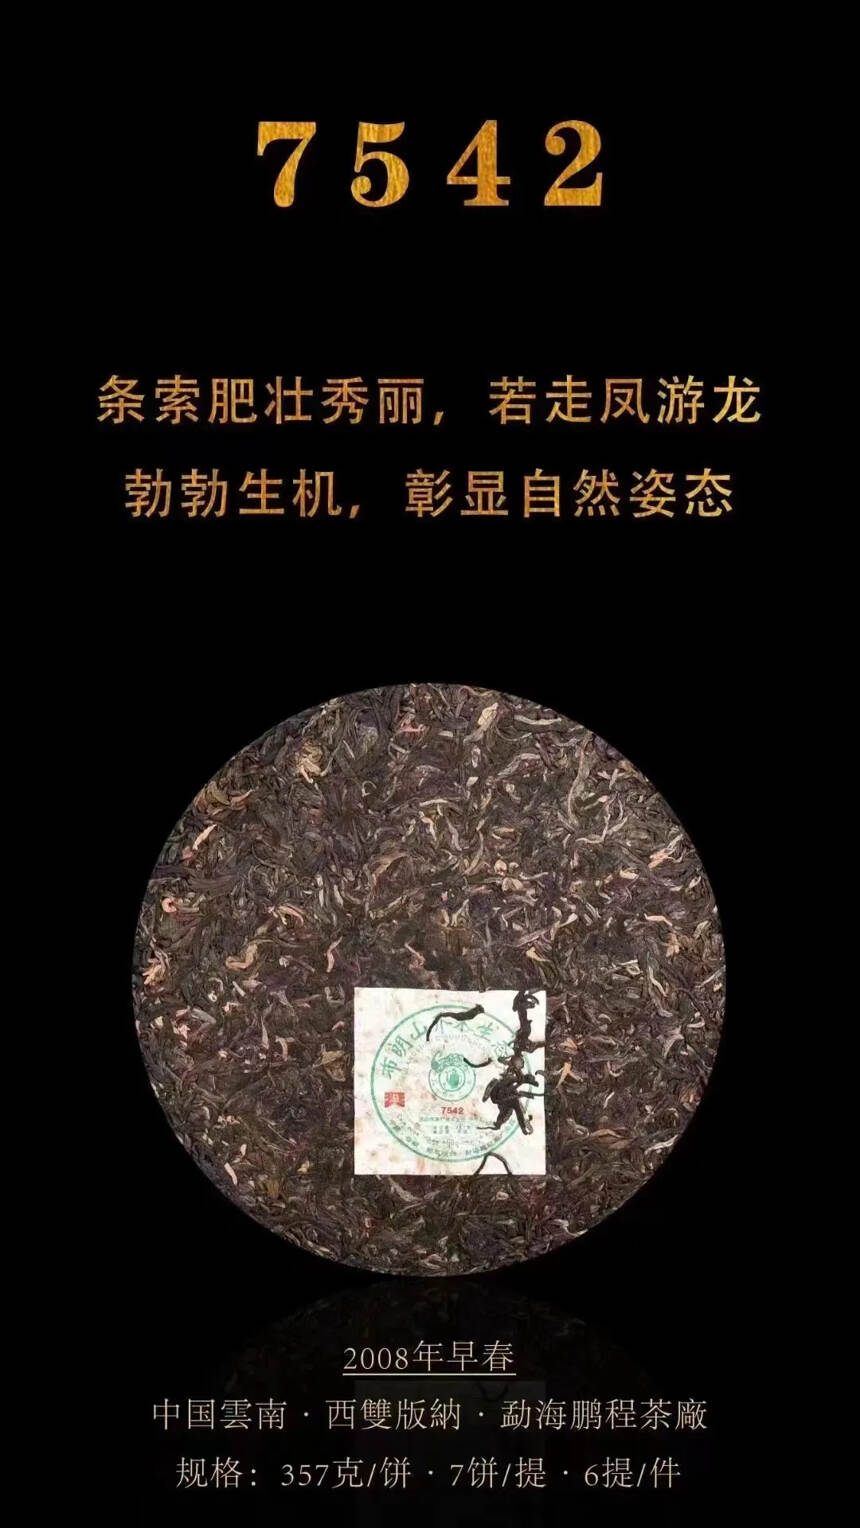 #普洱茶# 2008年鹏程茶厂布朗山乔木生态茶754